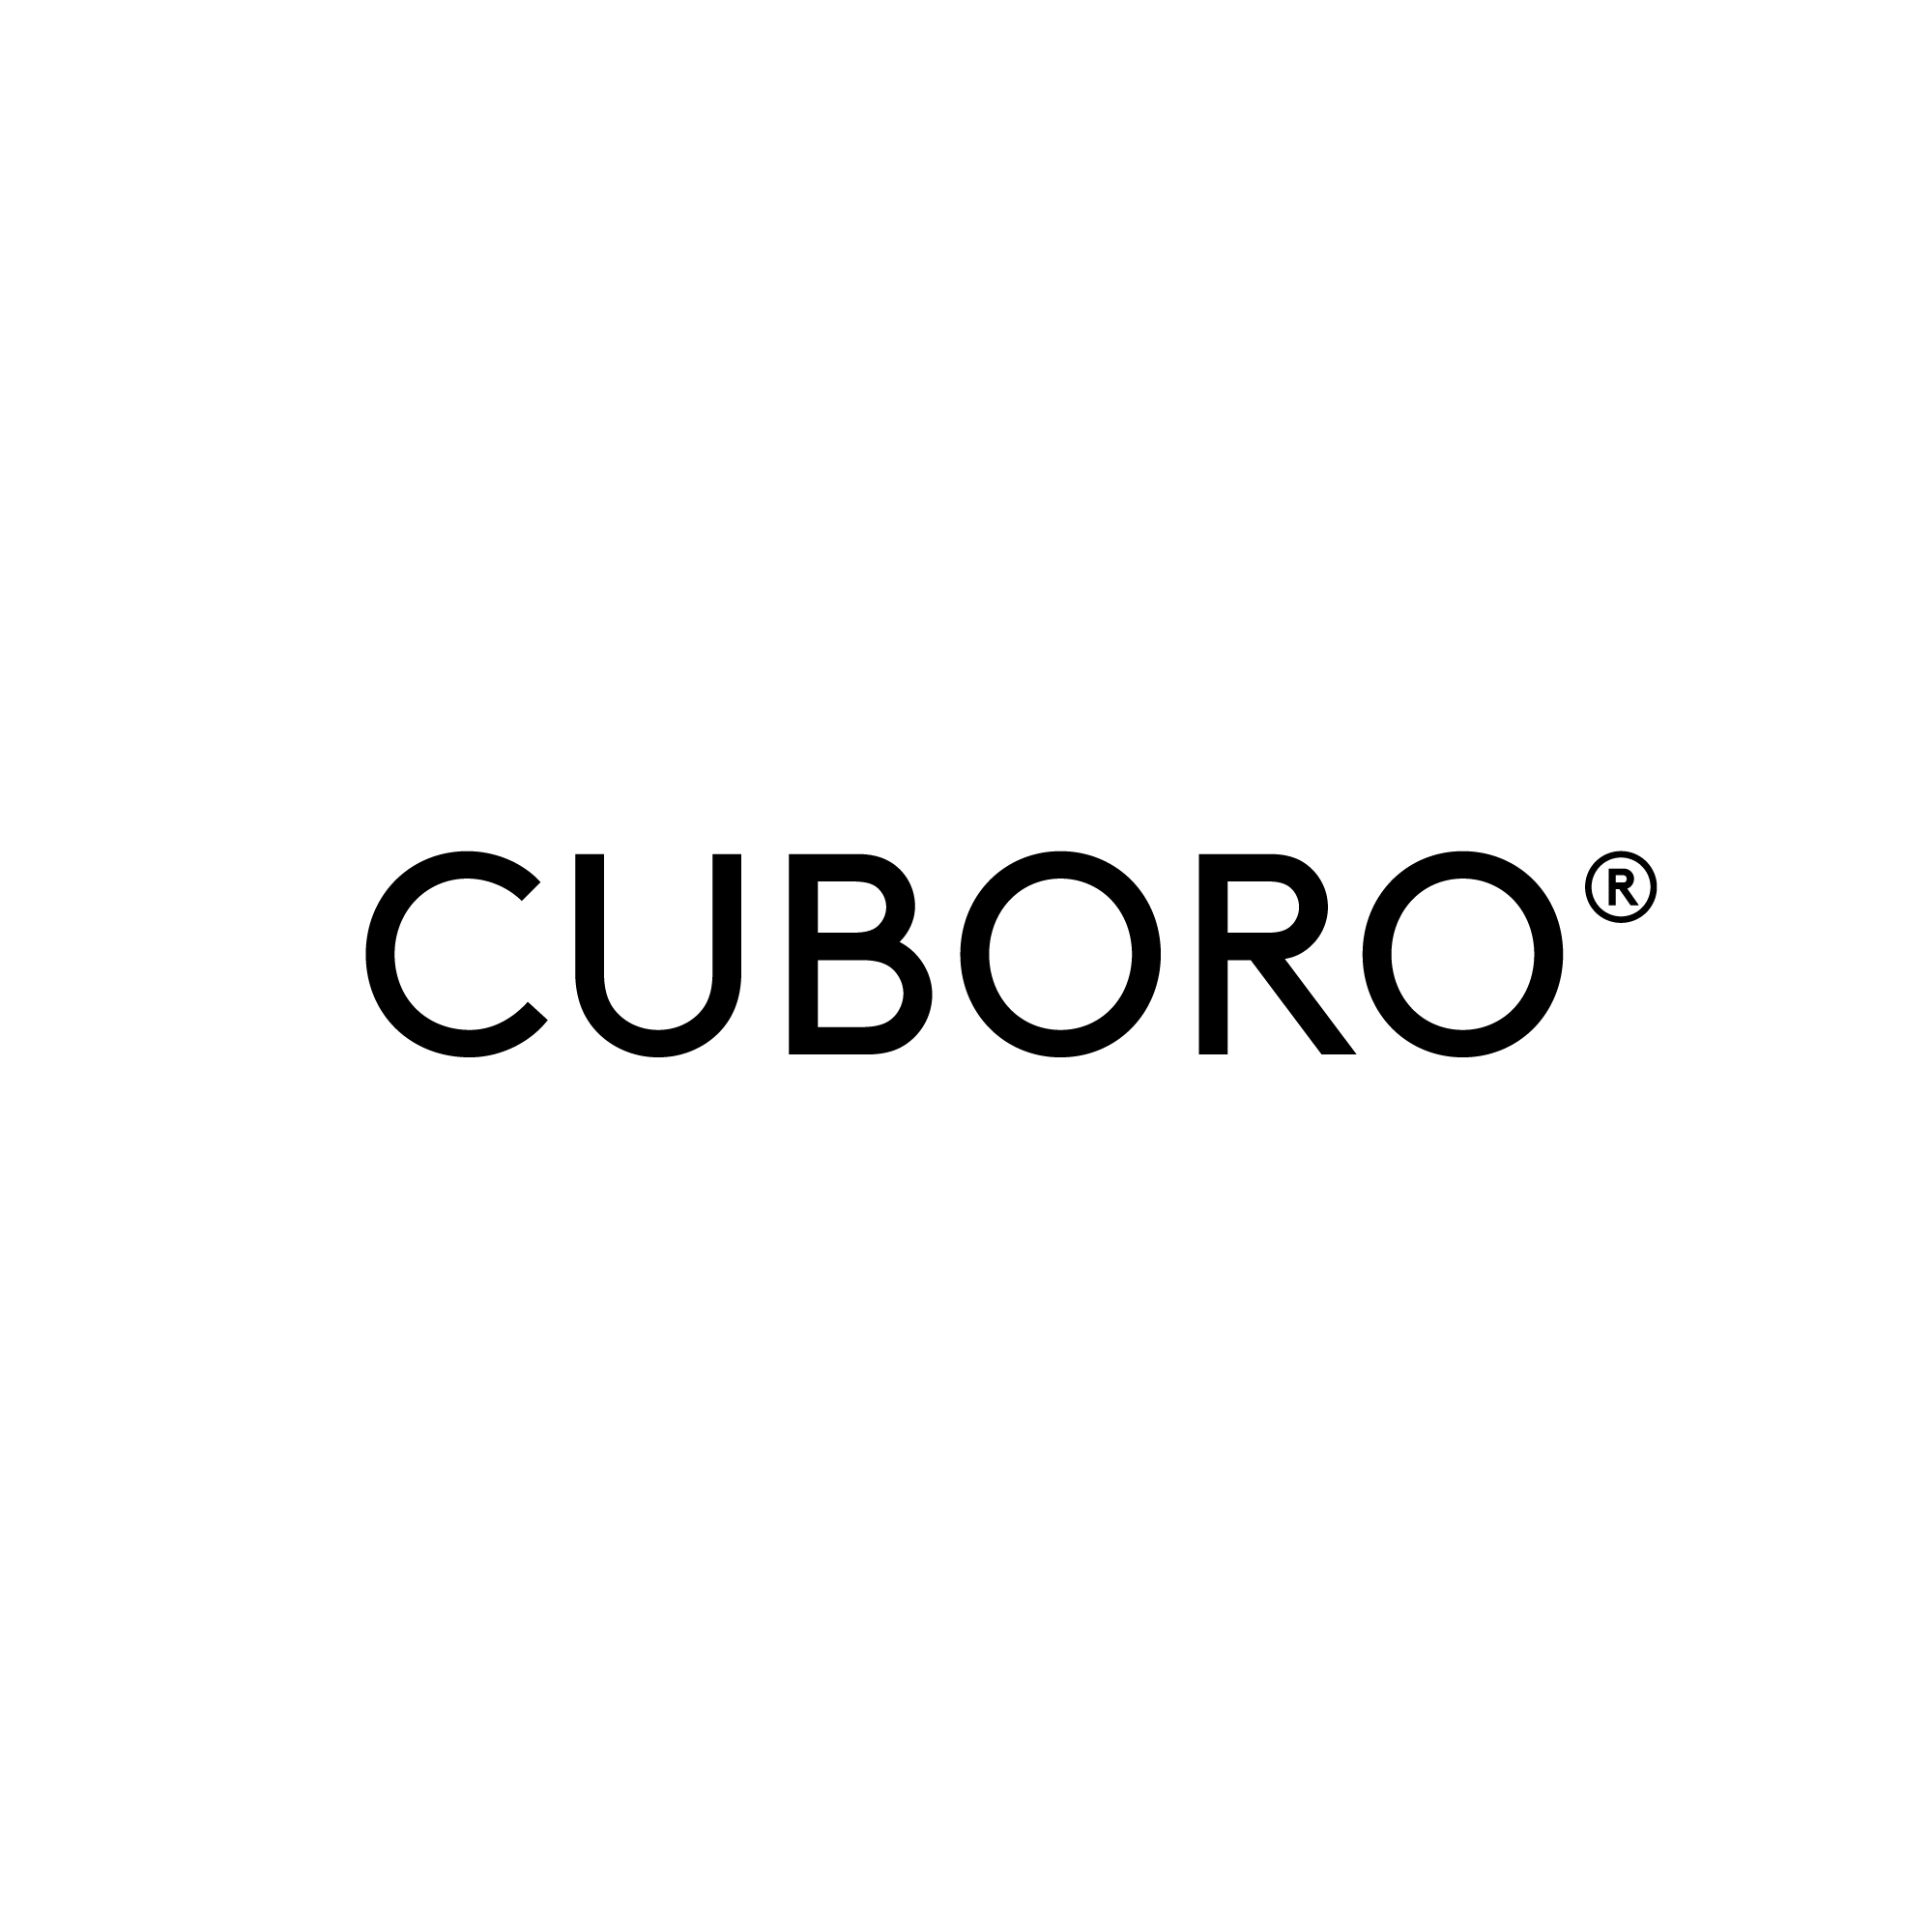 CUBORO-logo - Nyfeler Holzwaren AG